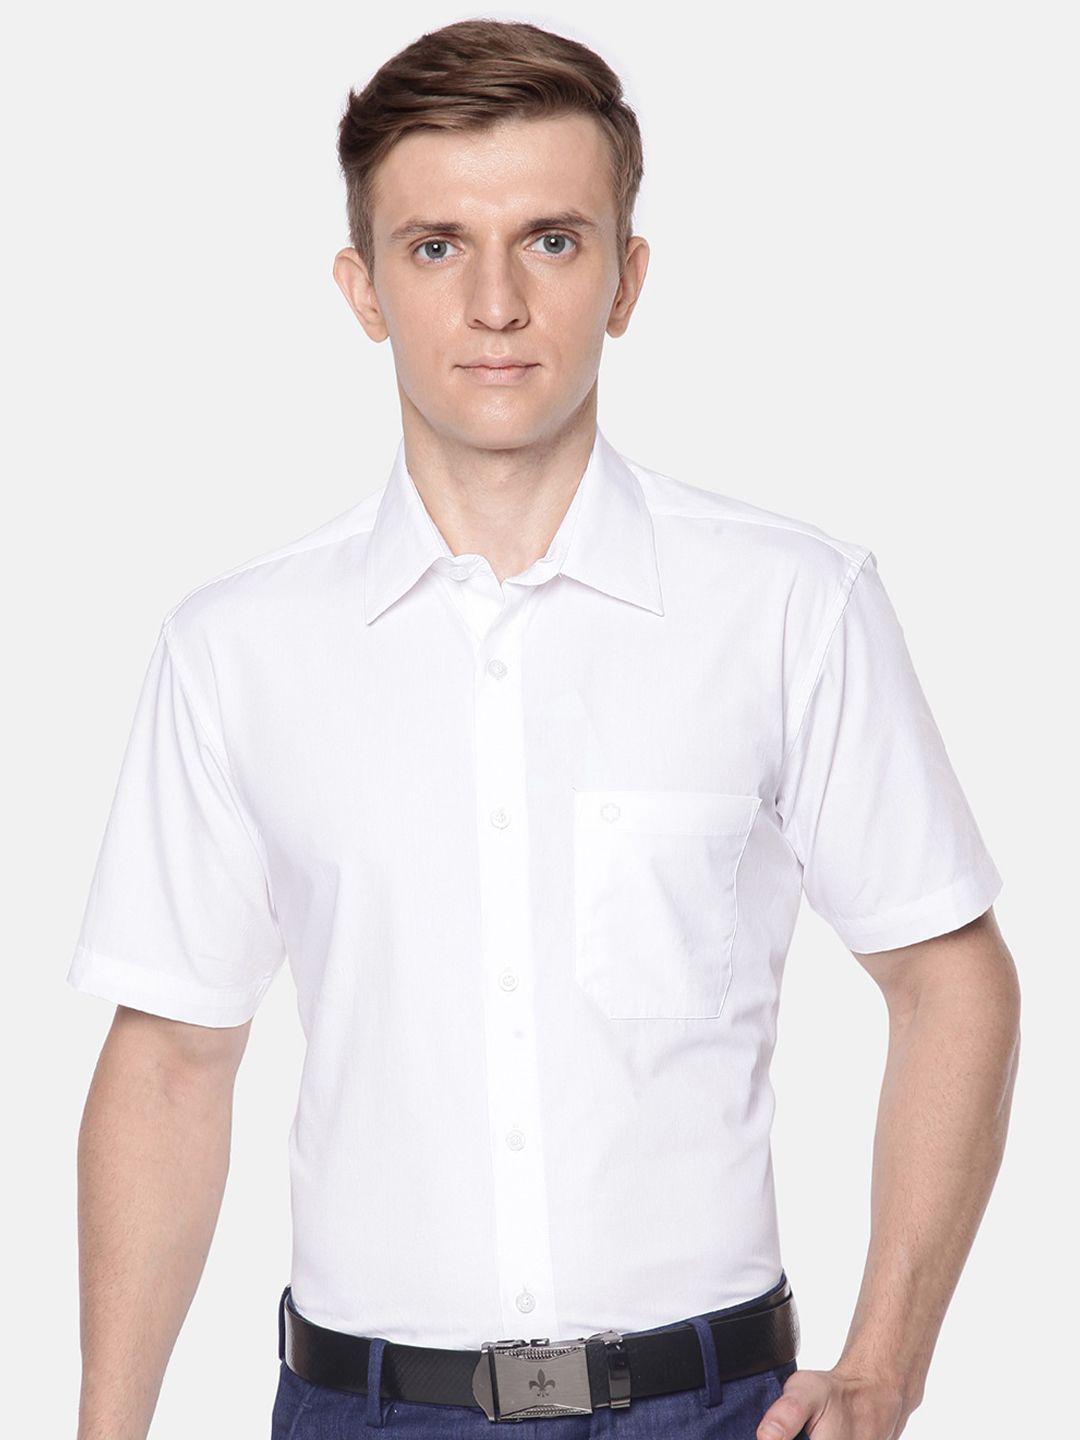 jansons men pure cotton formal shirt